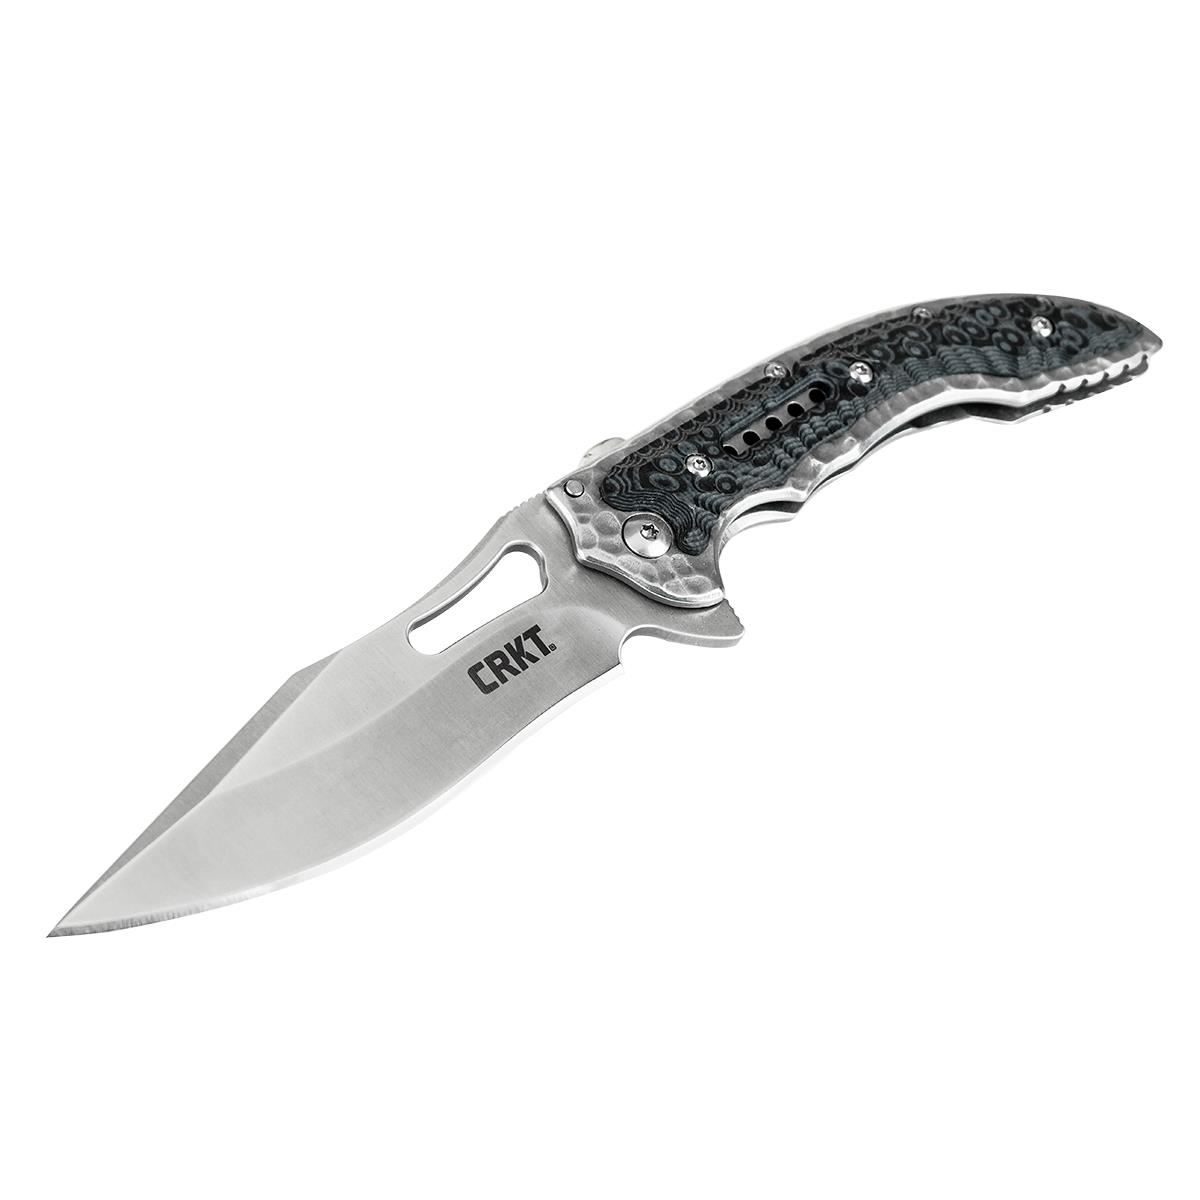 Нож Fossi складной, рук-ть сталь/G10, клинок 8Cr13MoV CRKT_5462 складной нож скаут d2